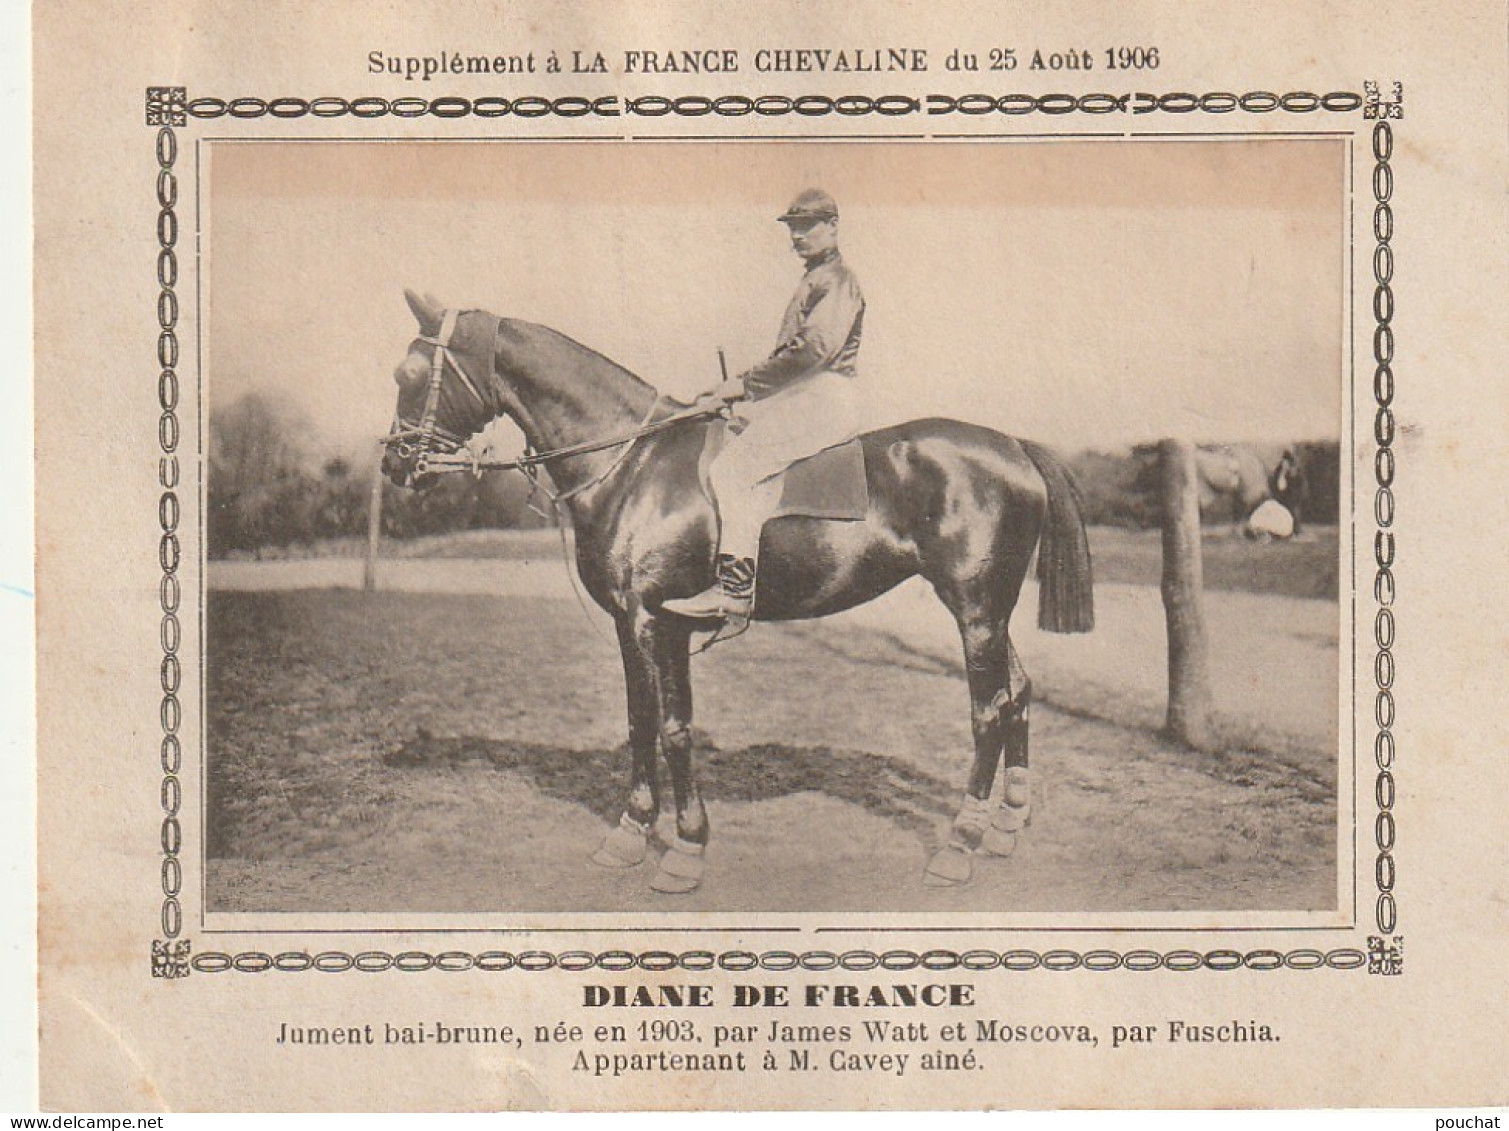 AA+ - " DIANE DE FRANCE " - JUMENT BAI BRUNE APPARTENANT A M. CAVEY AINE - SUPPL. FRANCE CHEVALINE AOUT 1906 - Reitsport